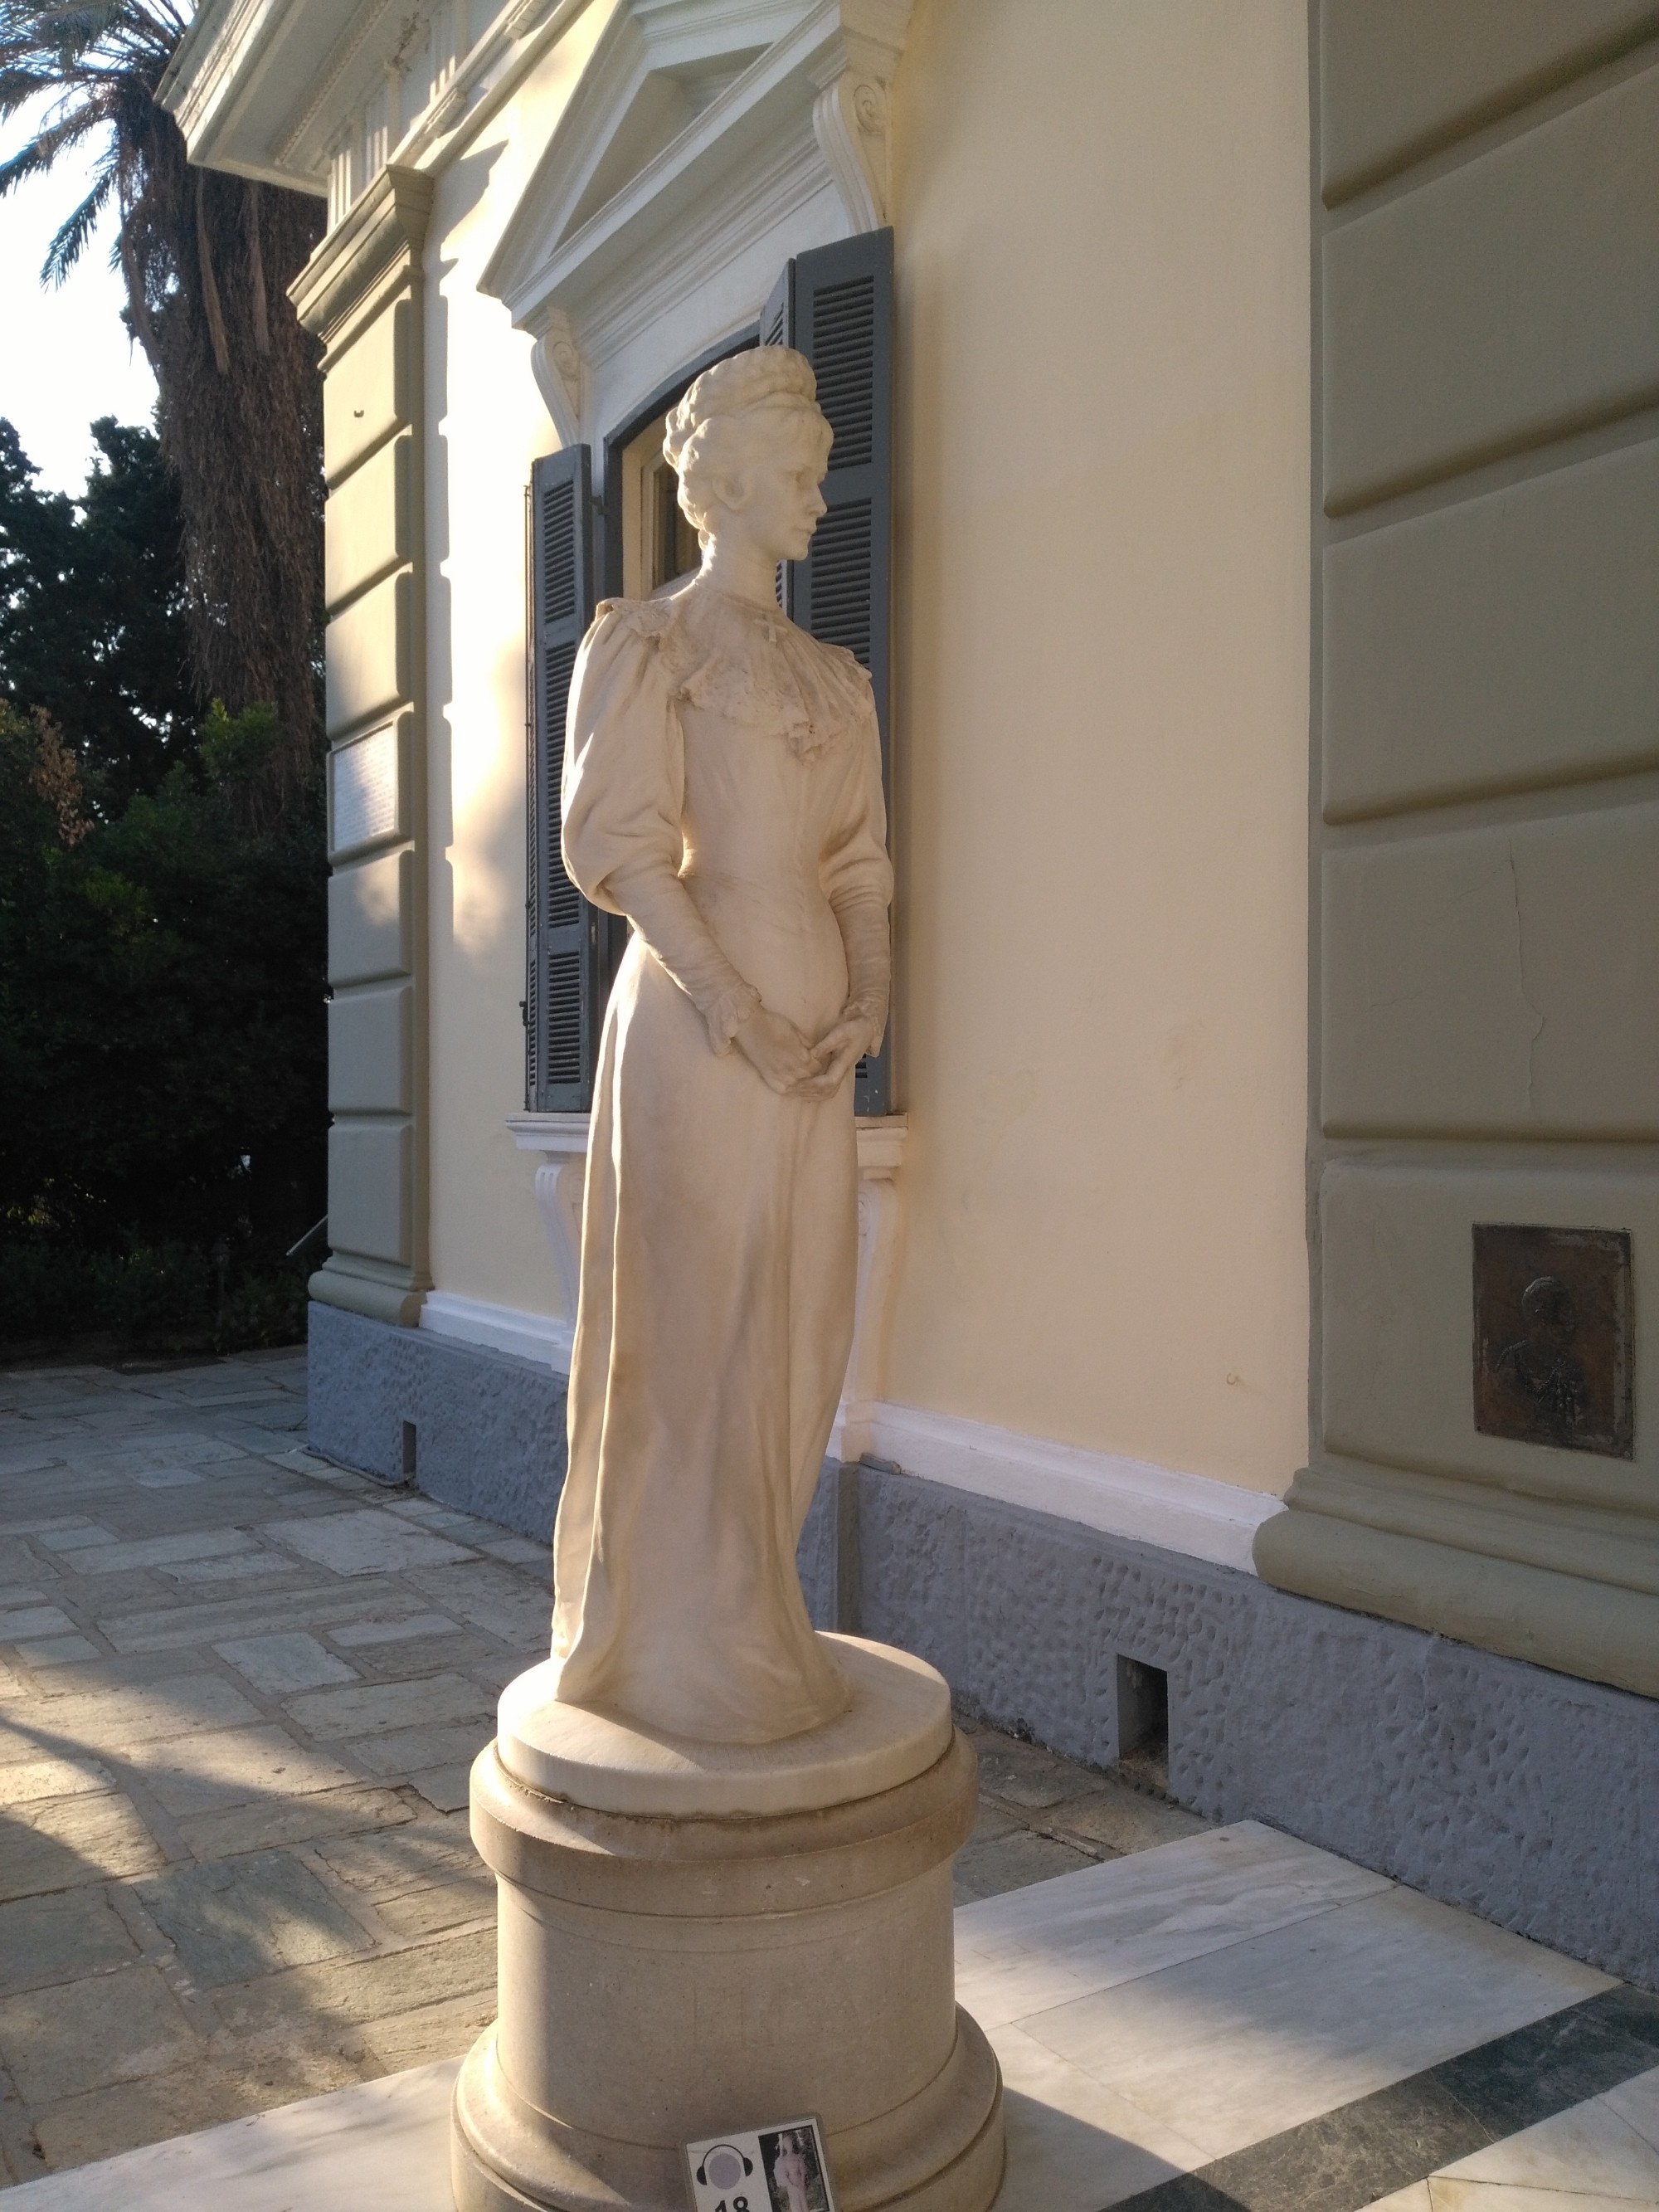 Статуя хозяйки виллы — императрицы Австрии Елизаветы Баварской (Сиси)